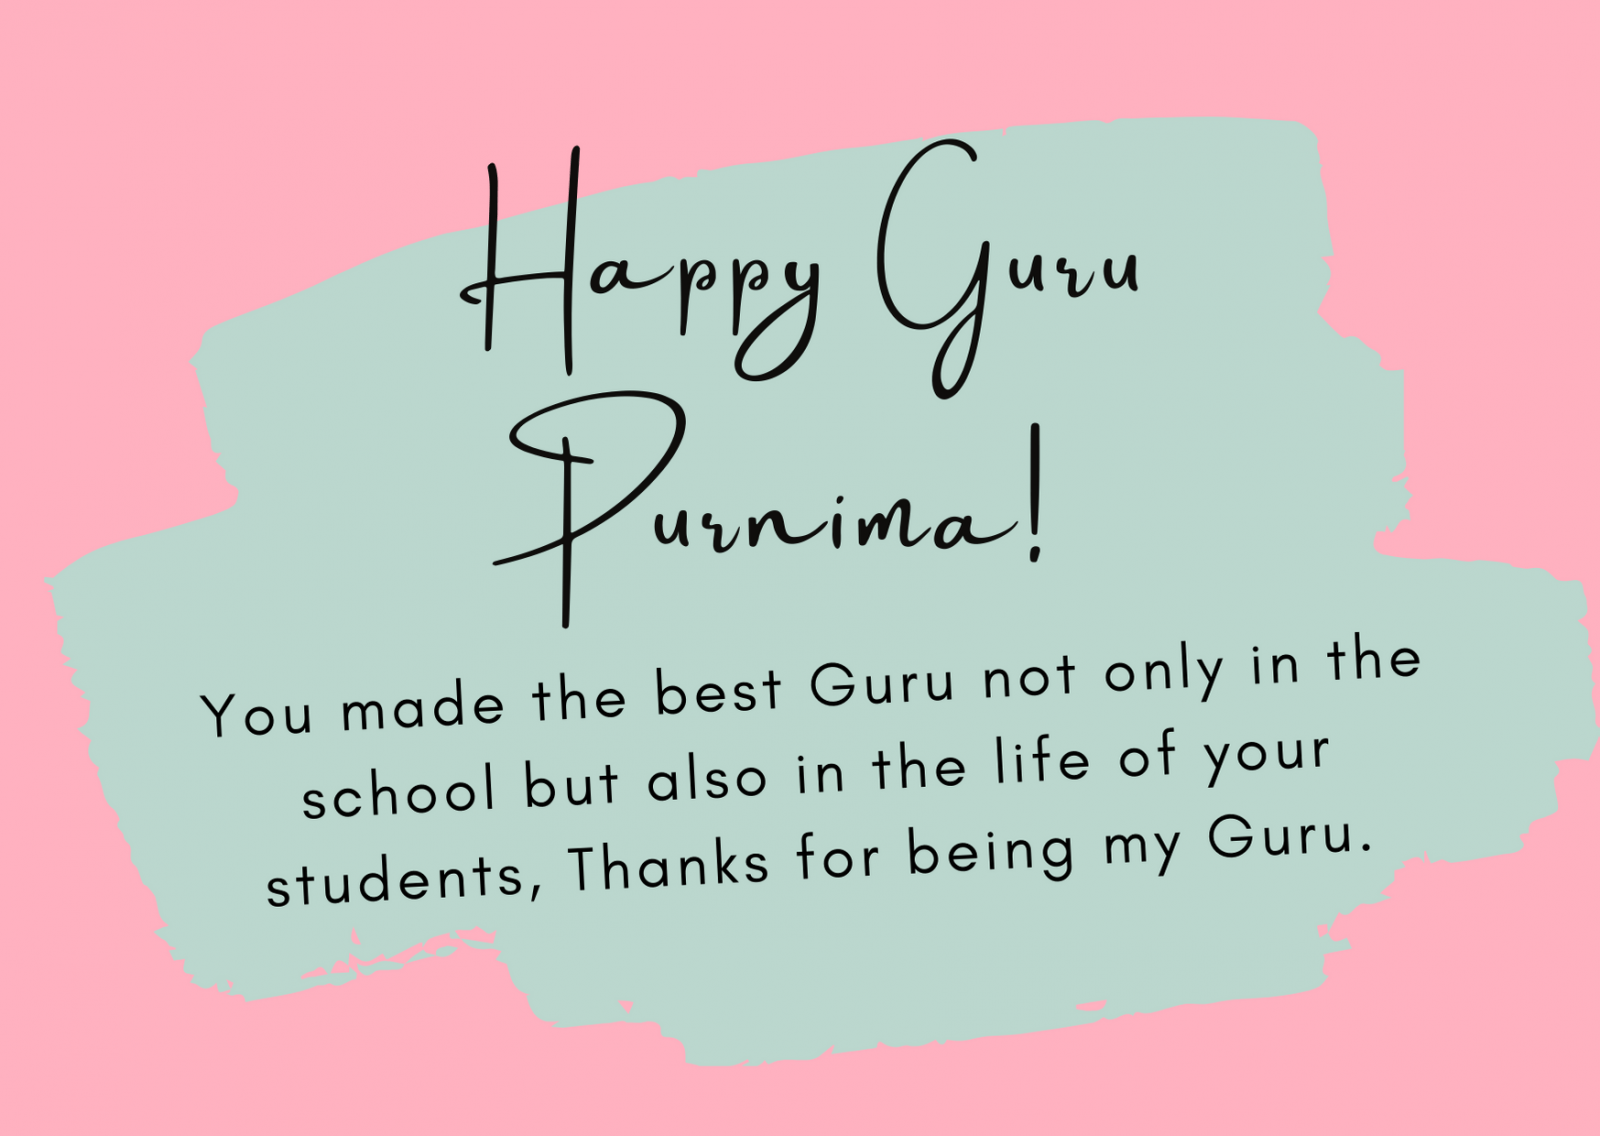 guru purnima wishes quotes